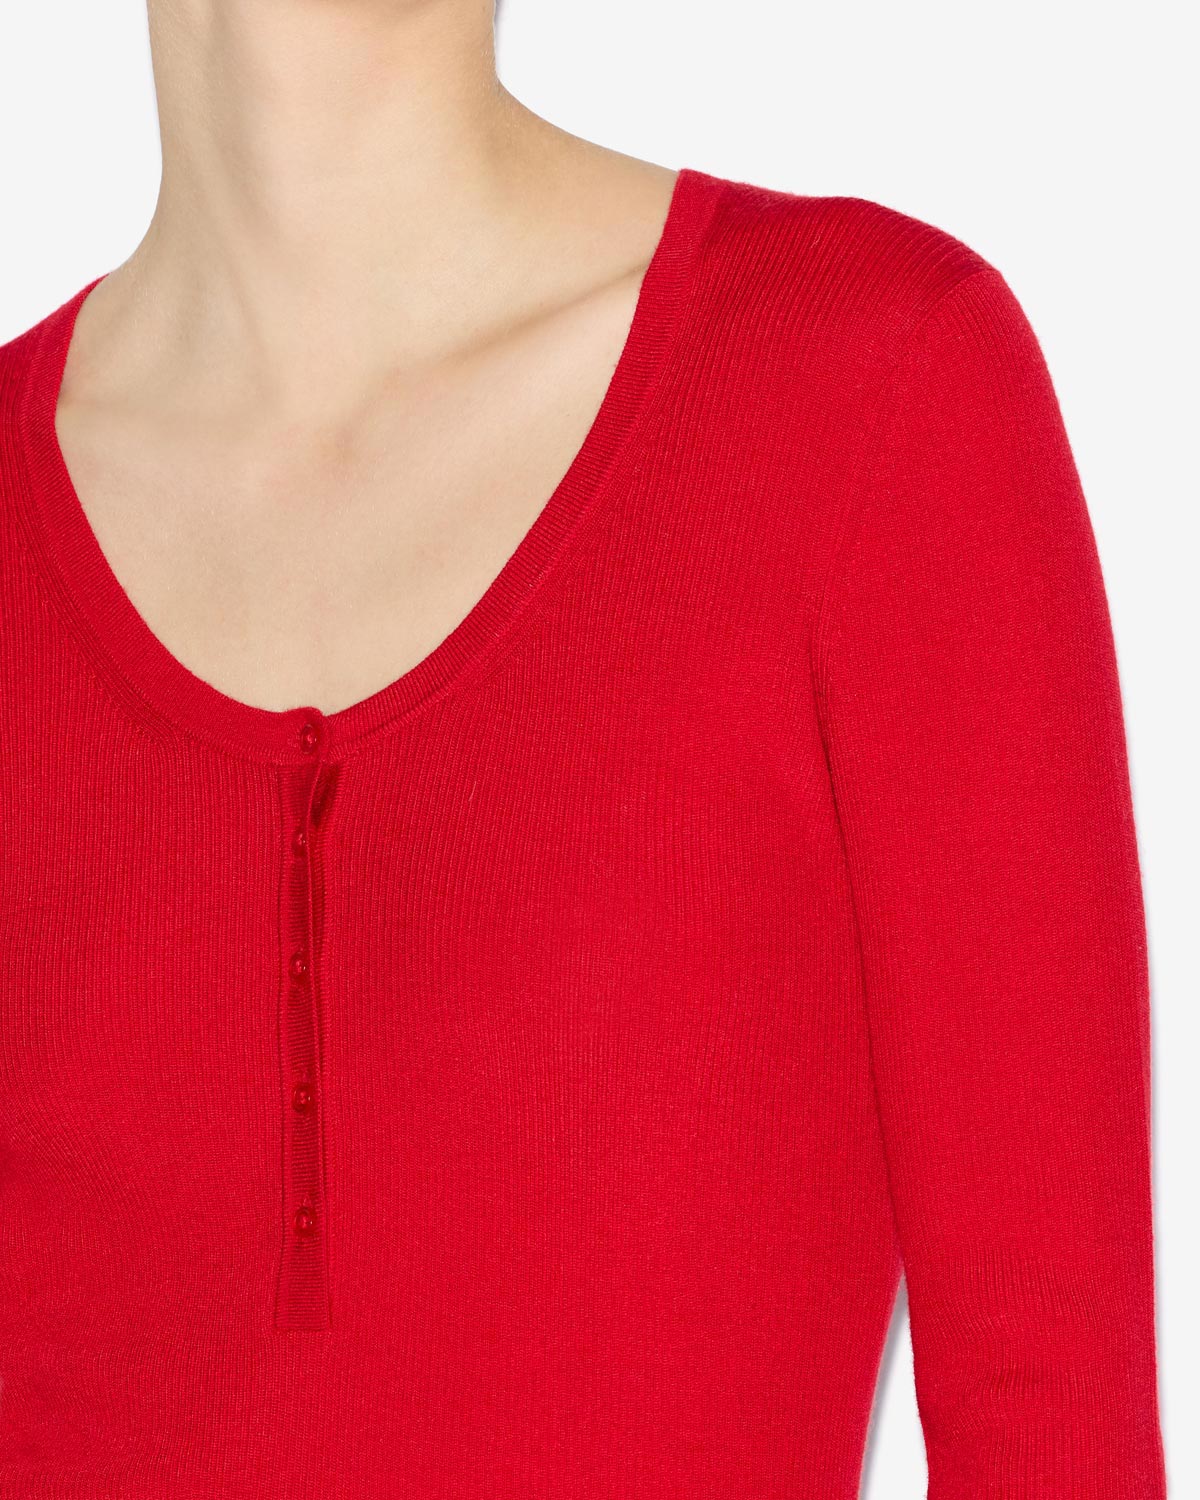 Estine sweater Woman Poppy red 2